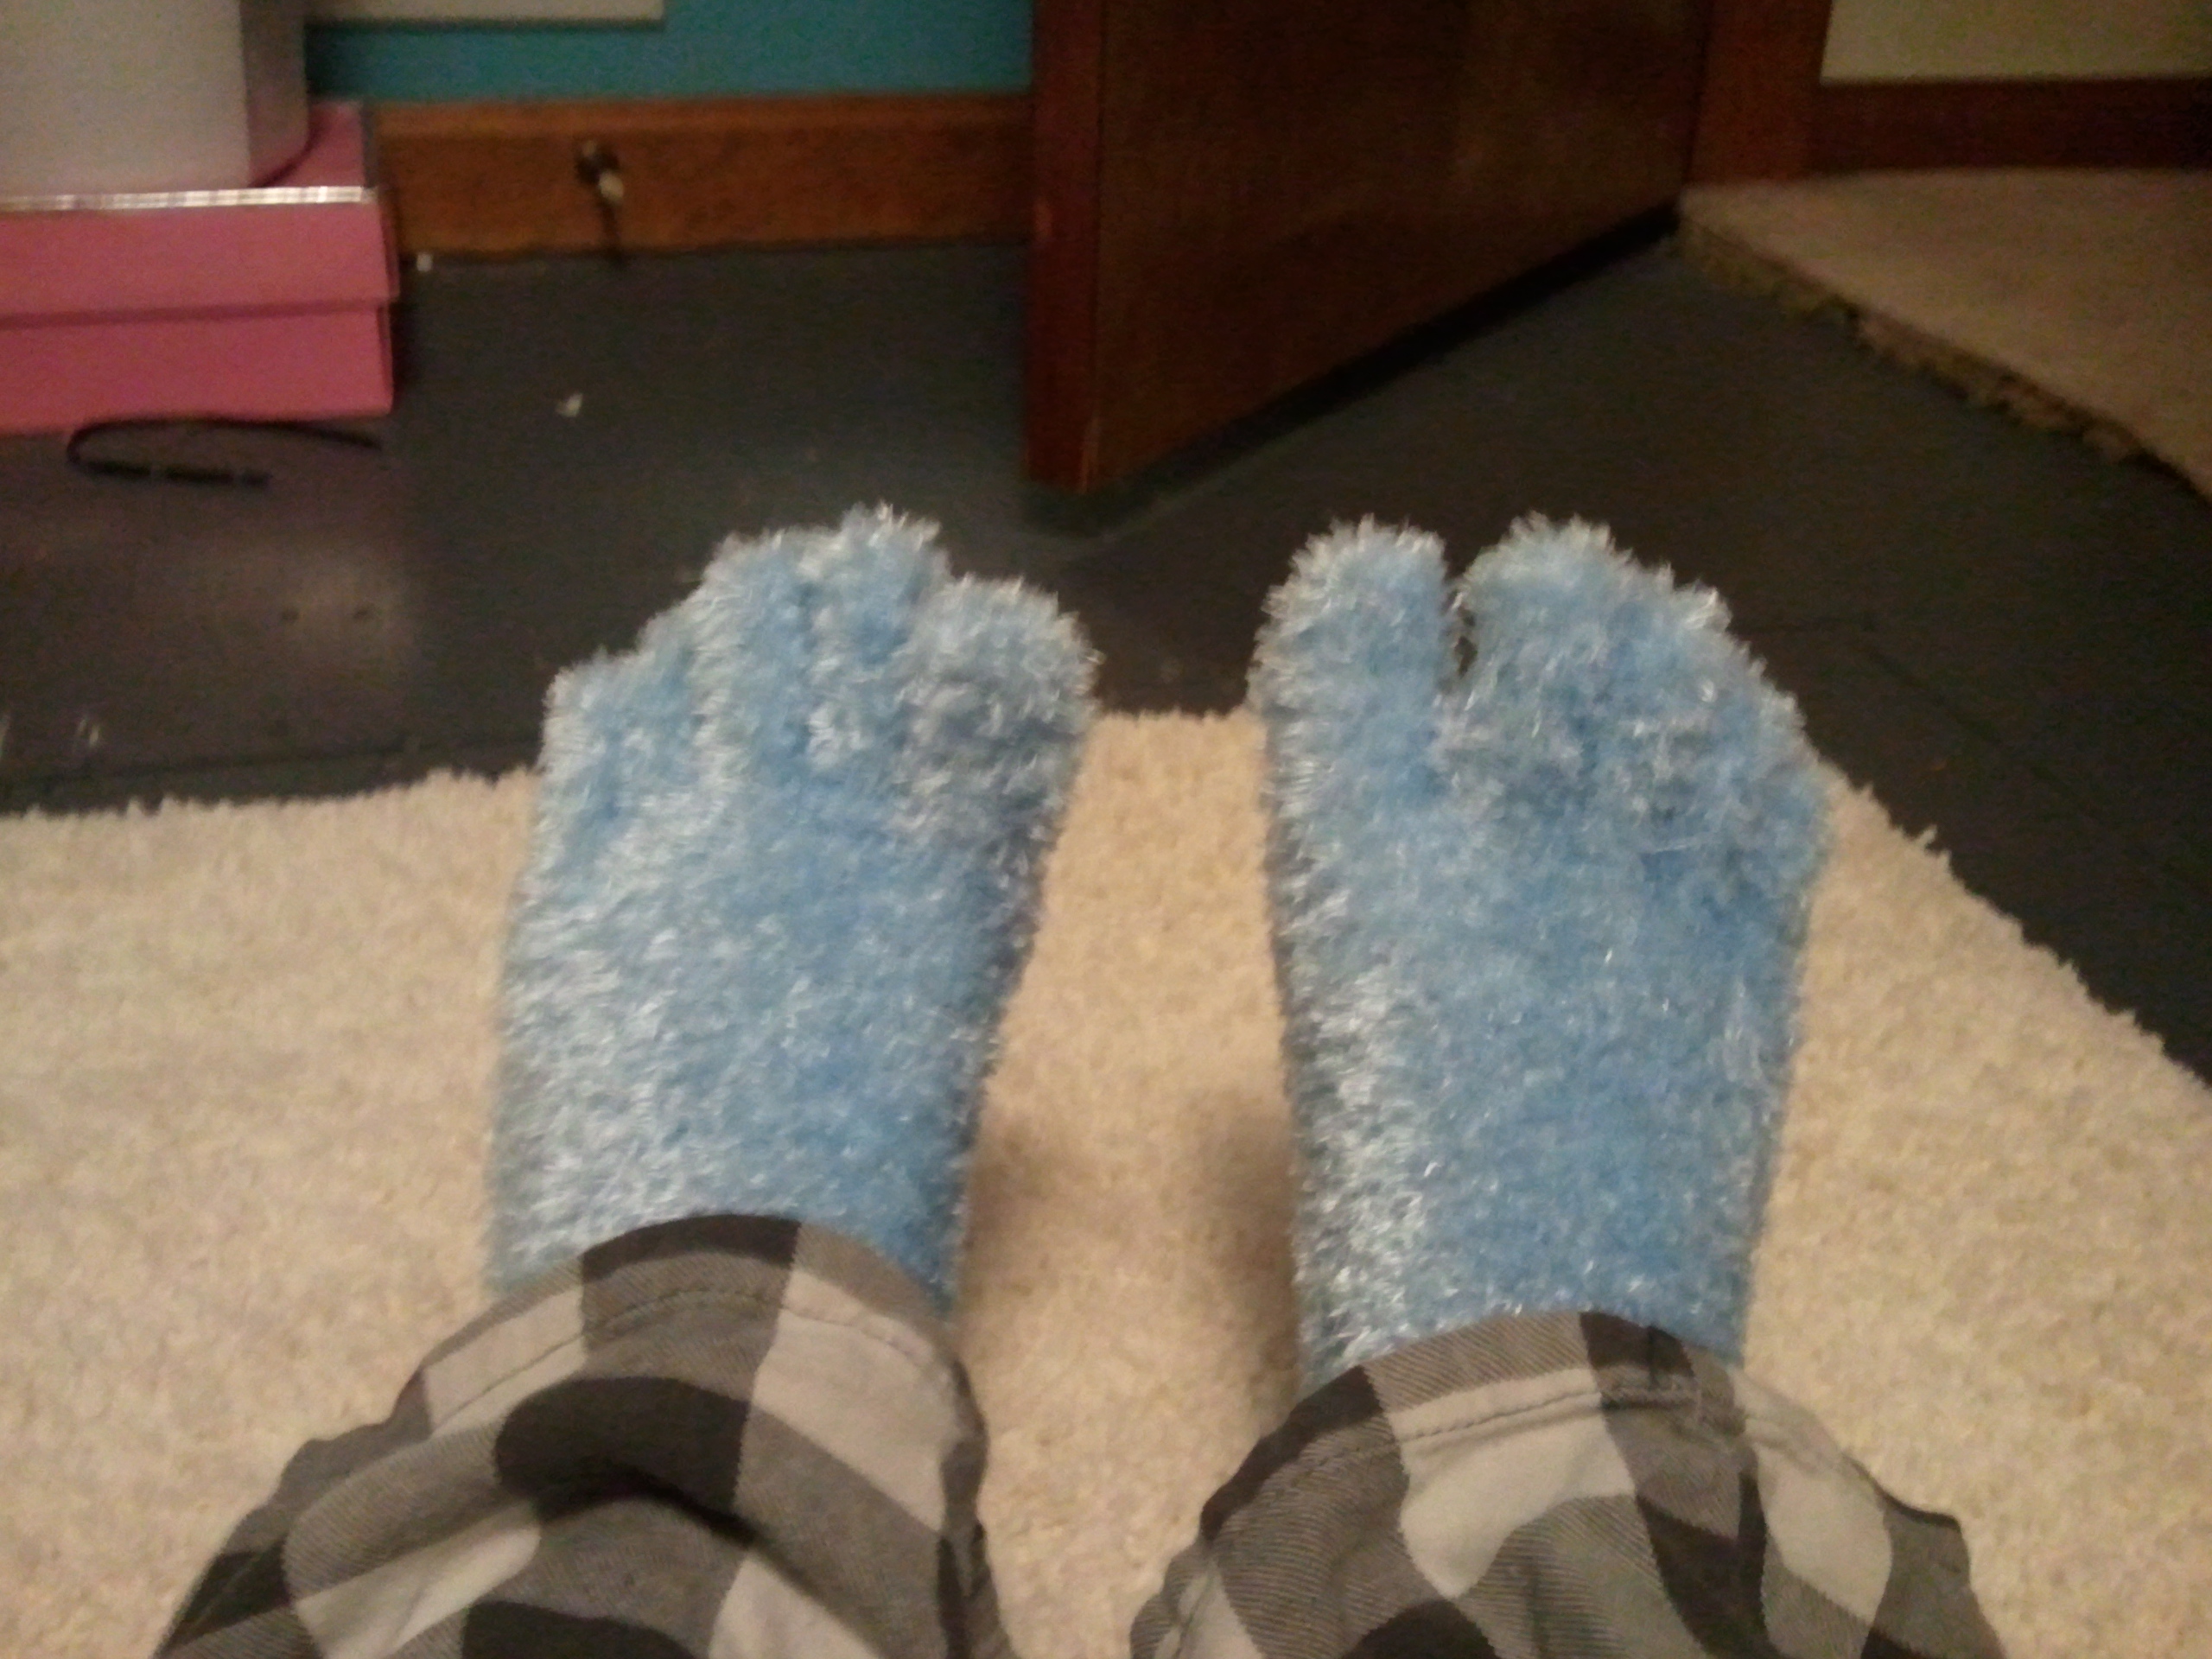 Courtney on X: fuzzy toe socks? #talkaboutagoodnight